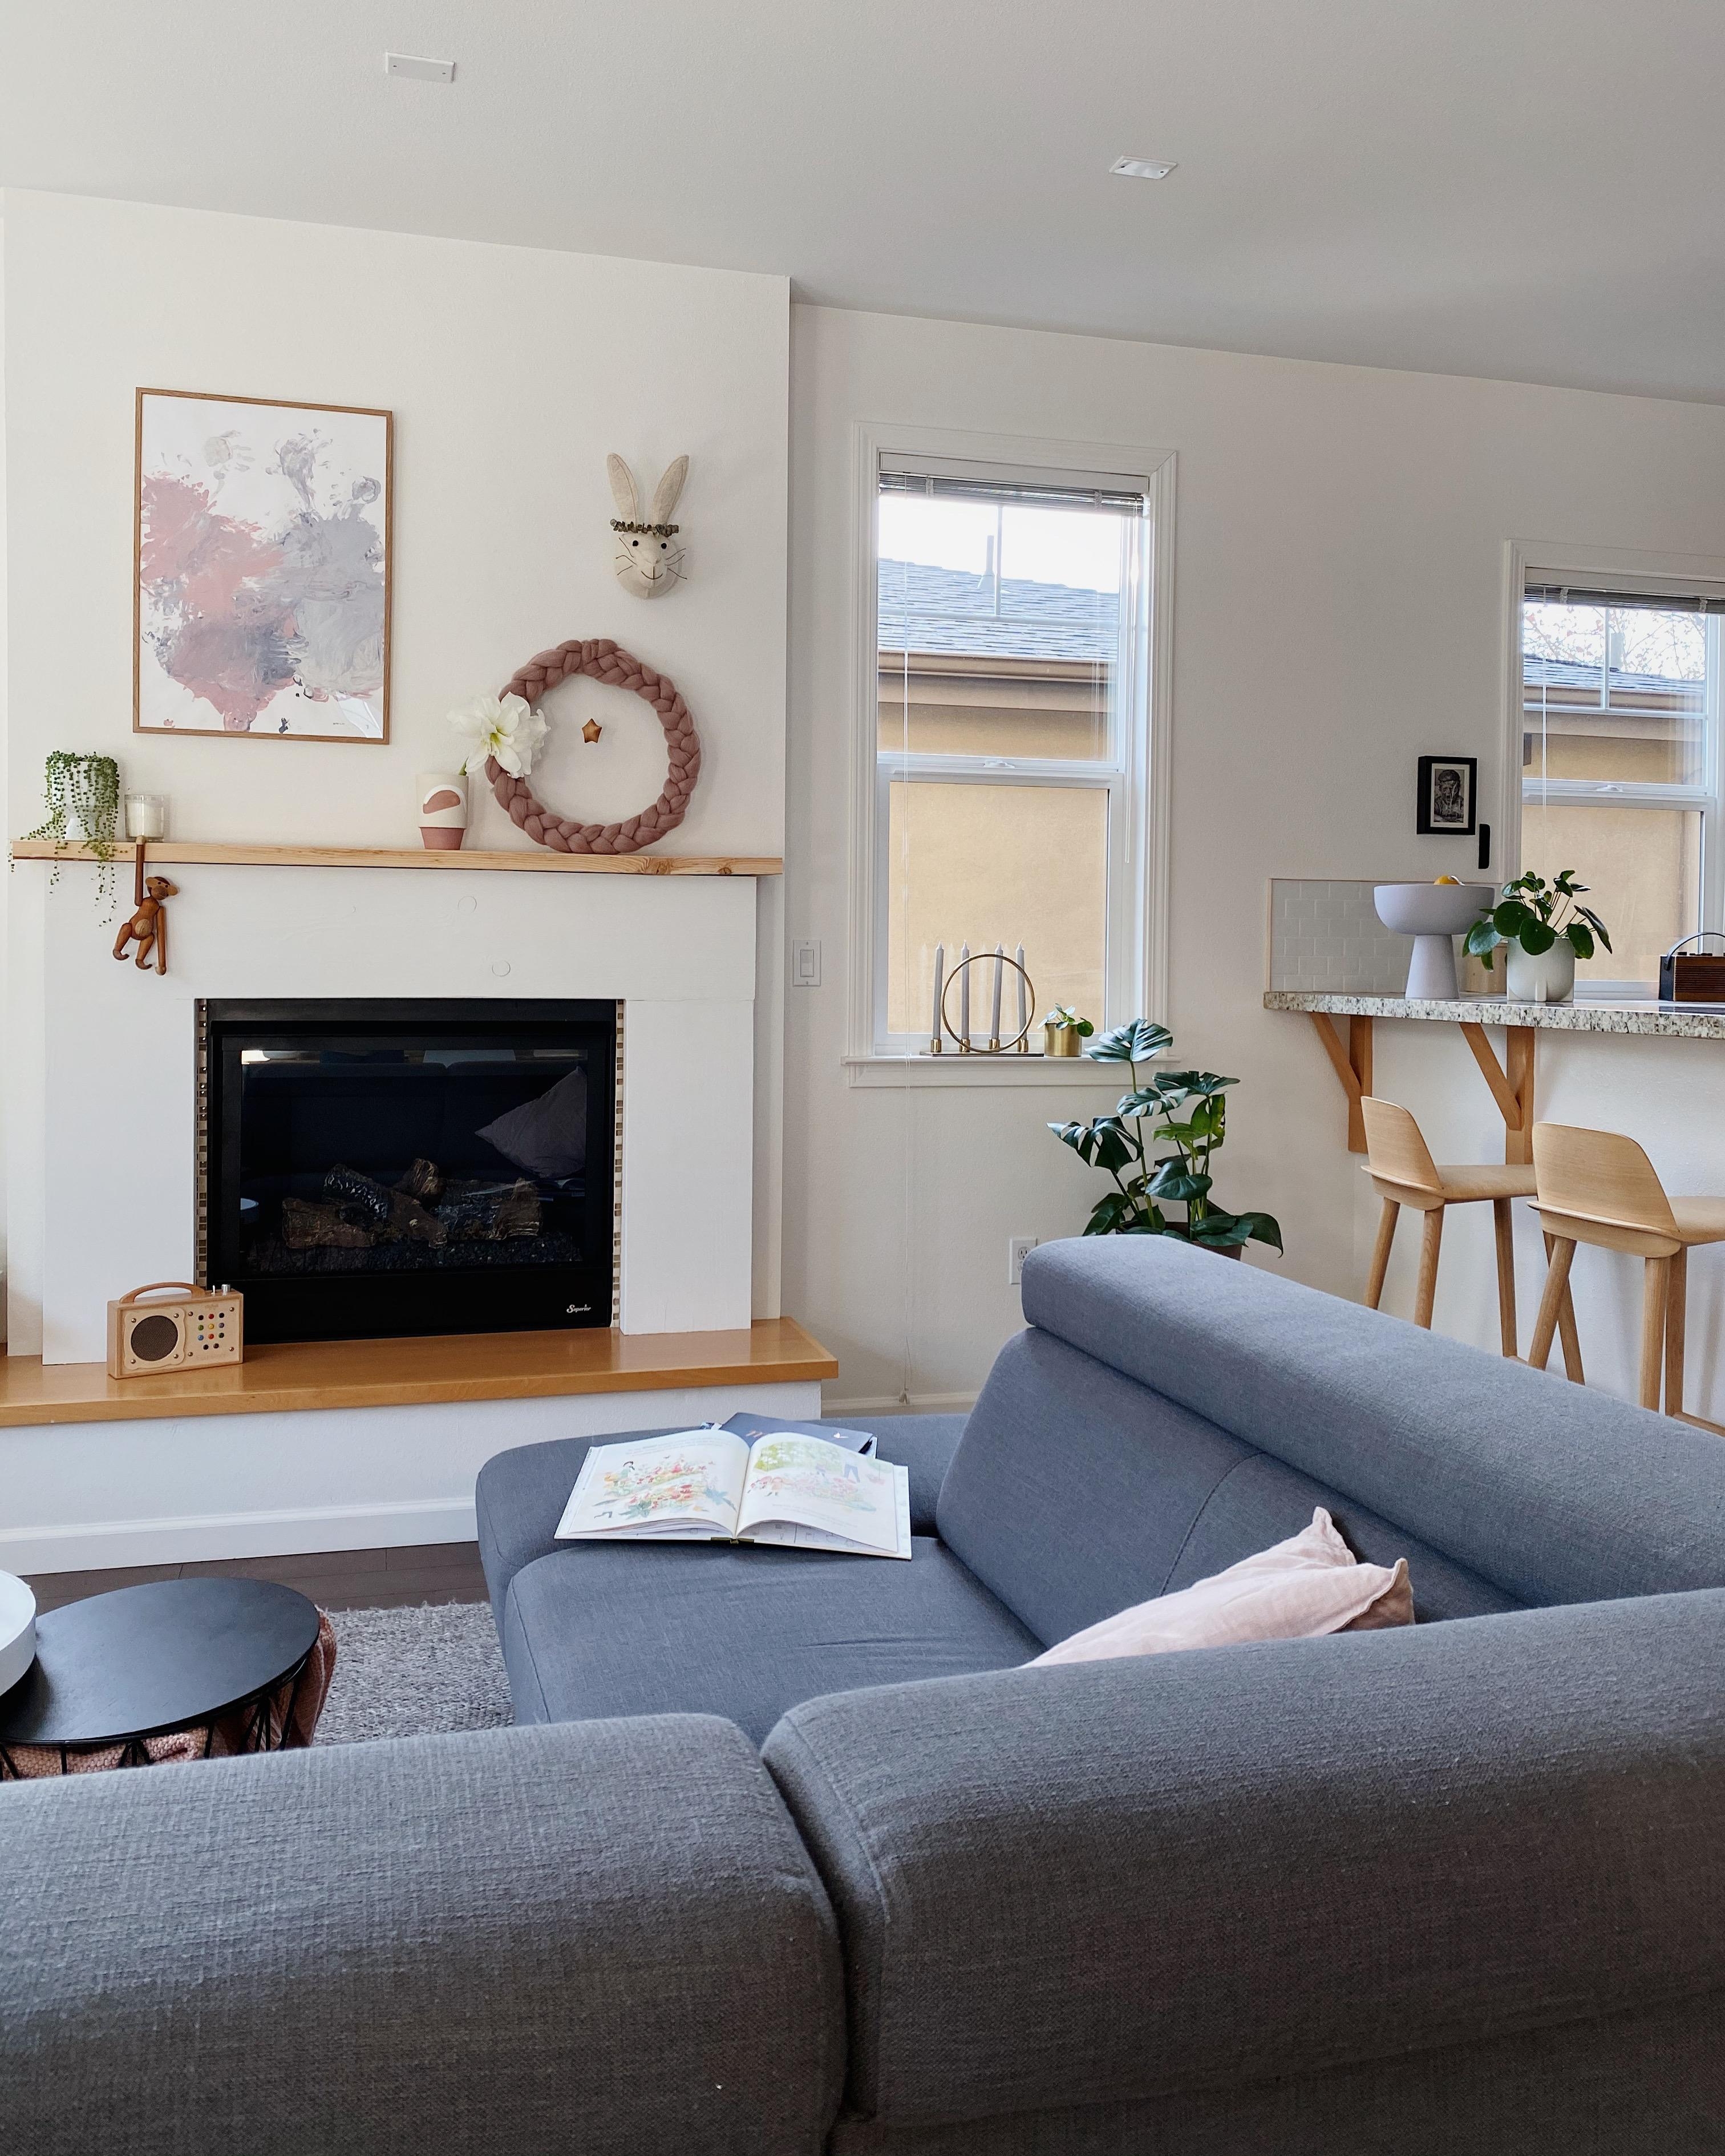 Bald gibt’s hier Veränderungen #livingroom #cozyplace #kamin 